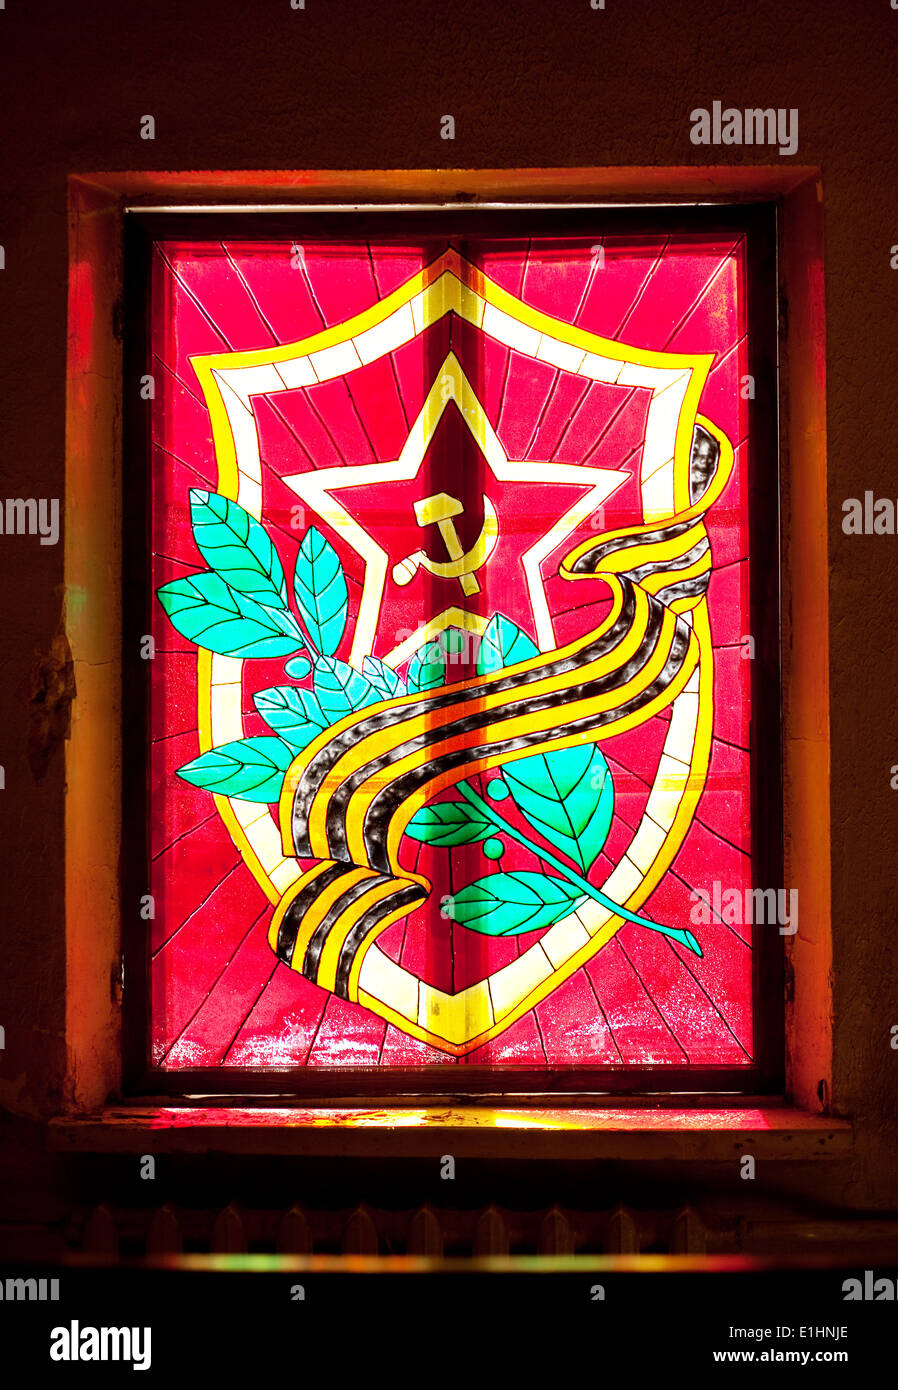 Wappen, Hammer und Sichel - Sowjetunion Buntglasfenster Kunst Retro-design Stockfoto